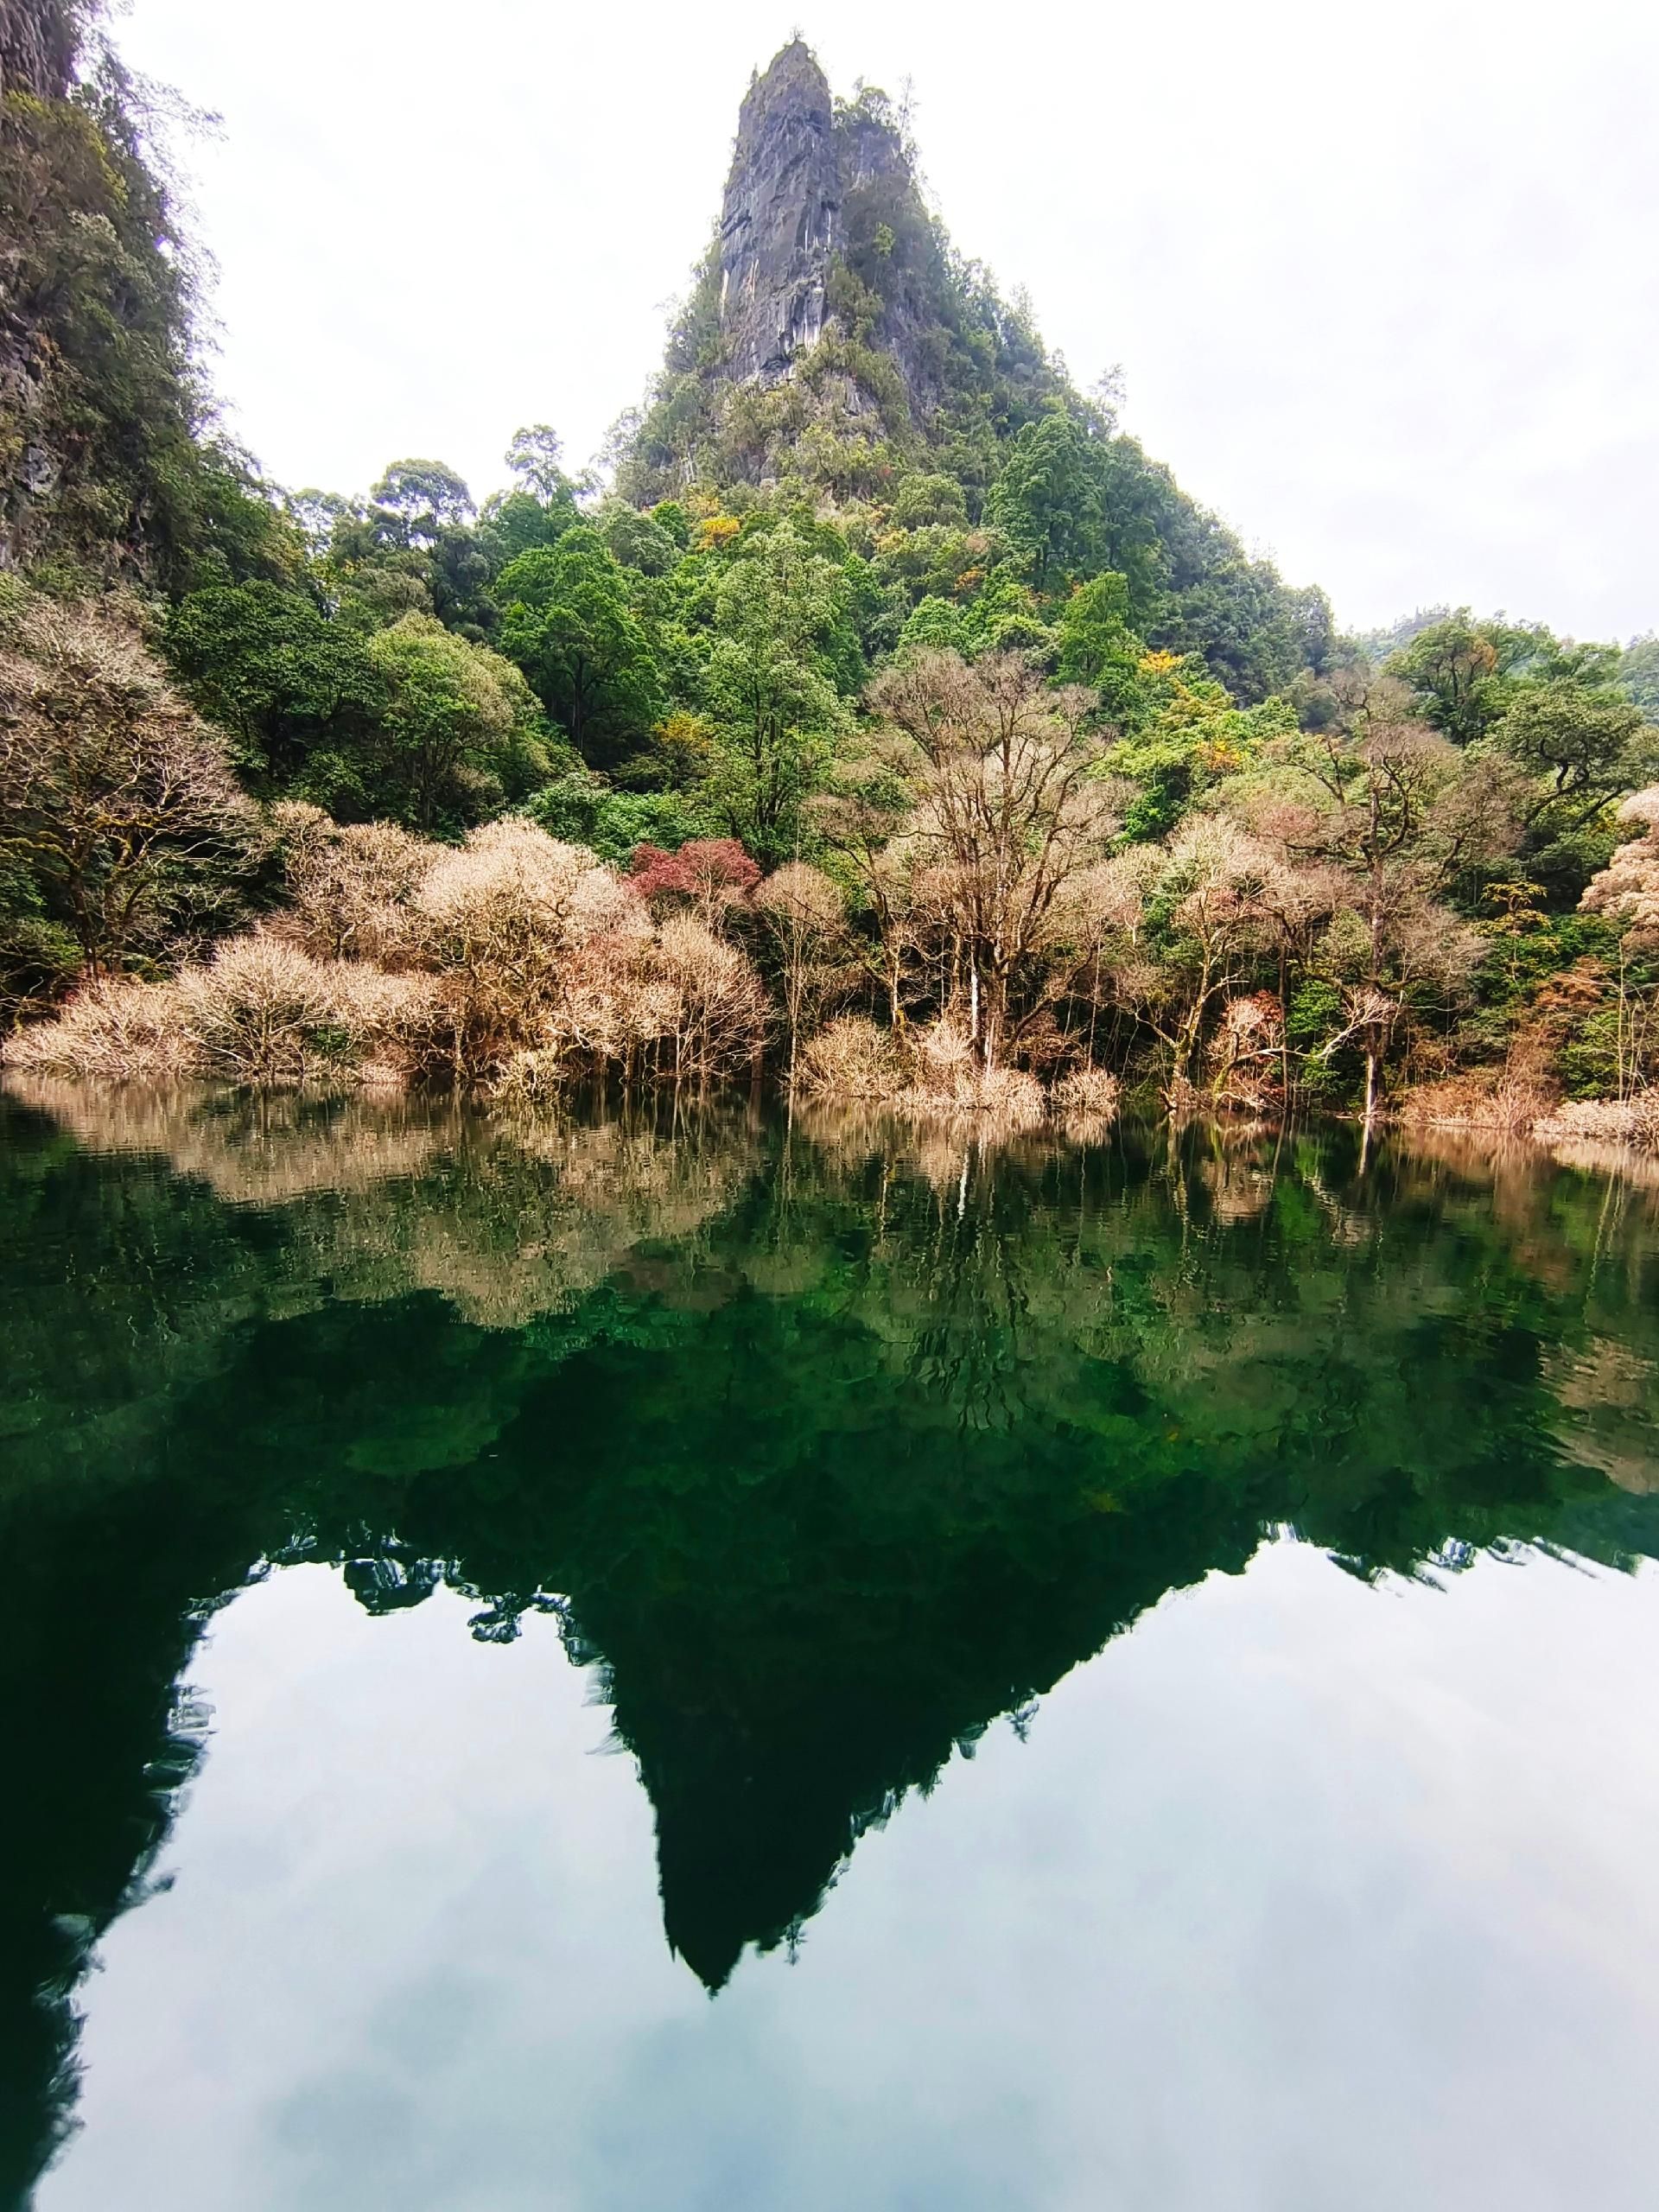 鹤峰五龙山旅游风景区图片